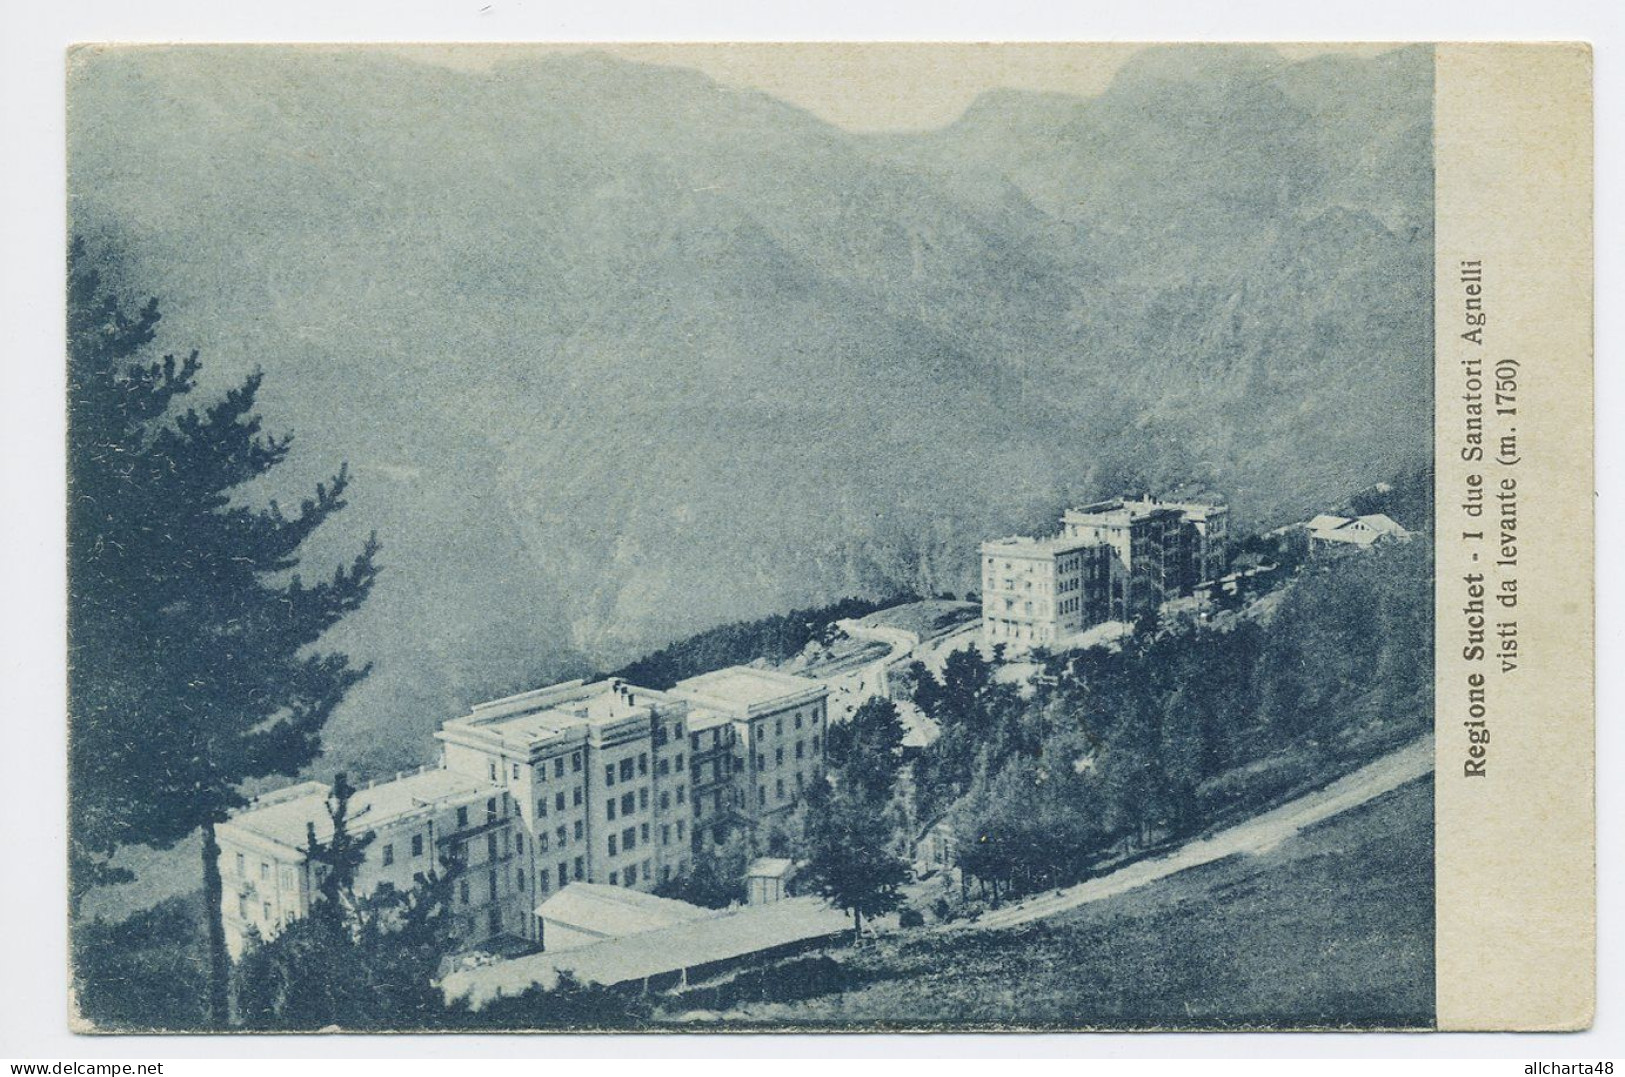 D6264] FENESTRELLE REGIONE SUCHET Torino I DUE SANATORI AGNELLI Cartolina Viaggiata 1939 - Viste Panoramiche, Panorama